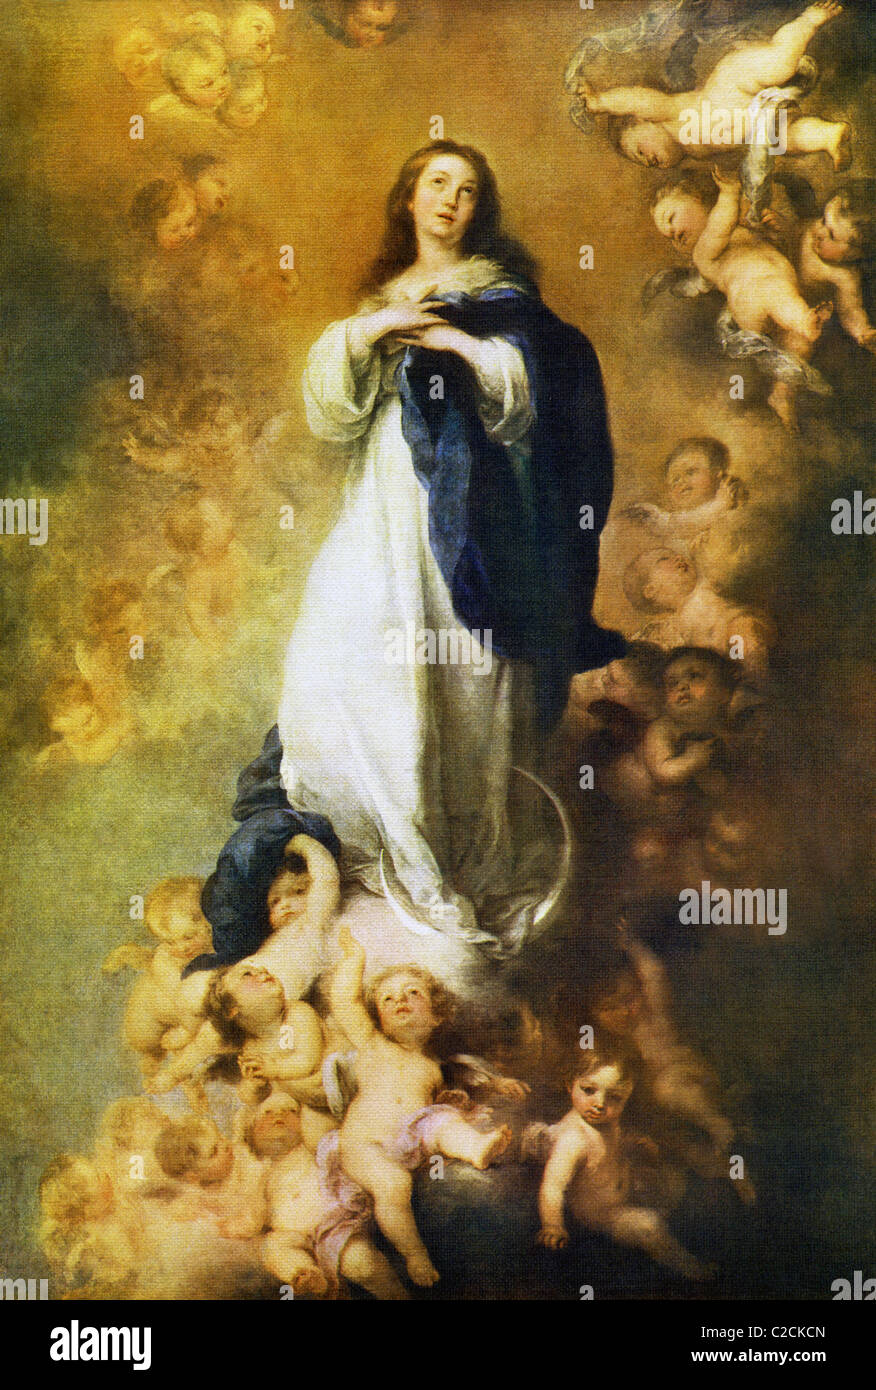 Spanischen Barock Maler Bartolome Esteban Murillo malte dieses Unbefleckte Empfängnis der Jungfrau Maria. Stockfoto